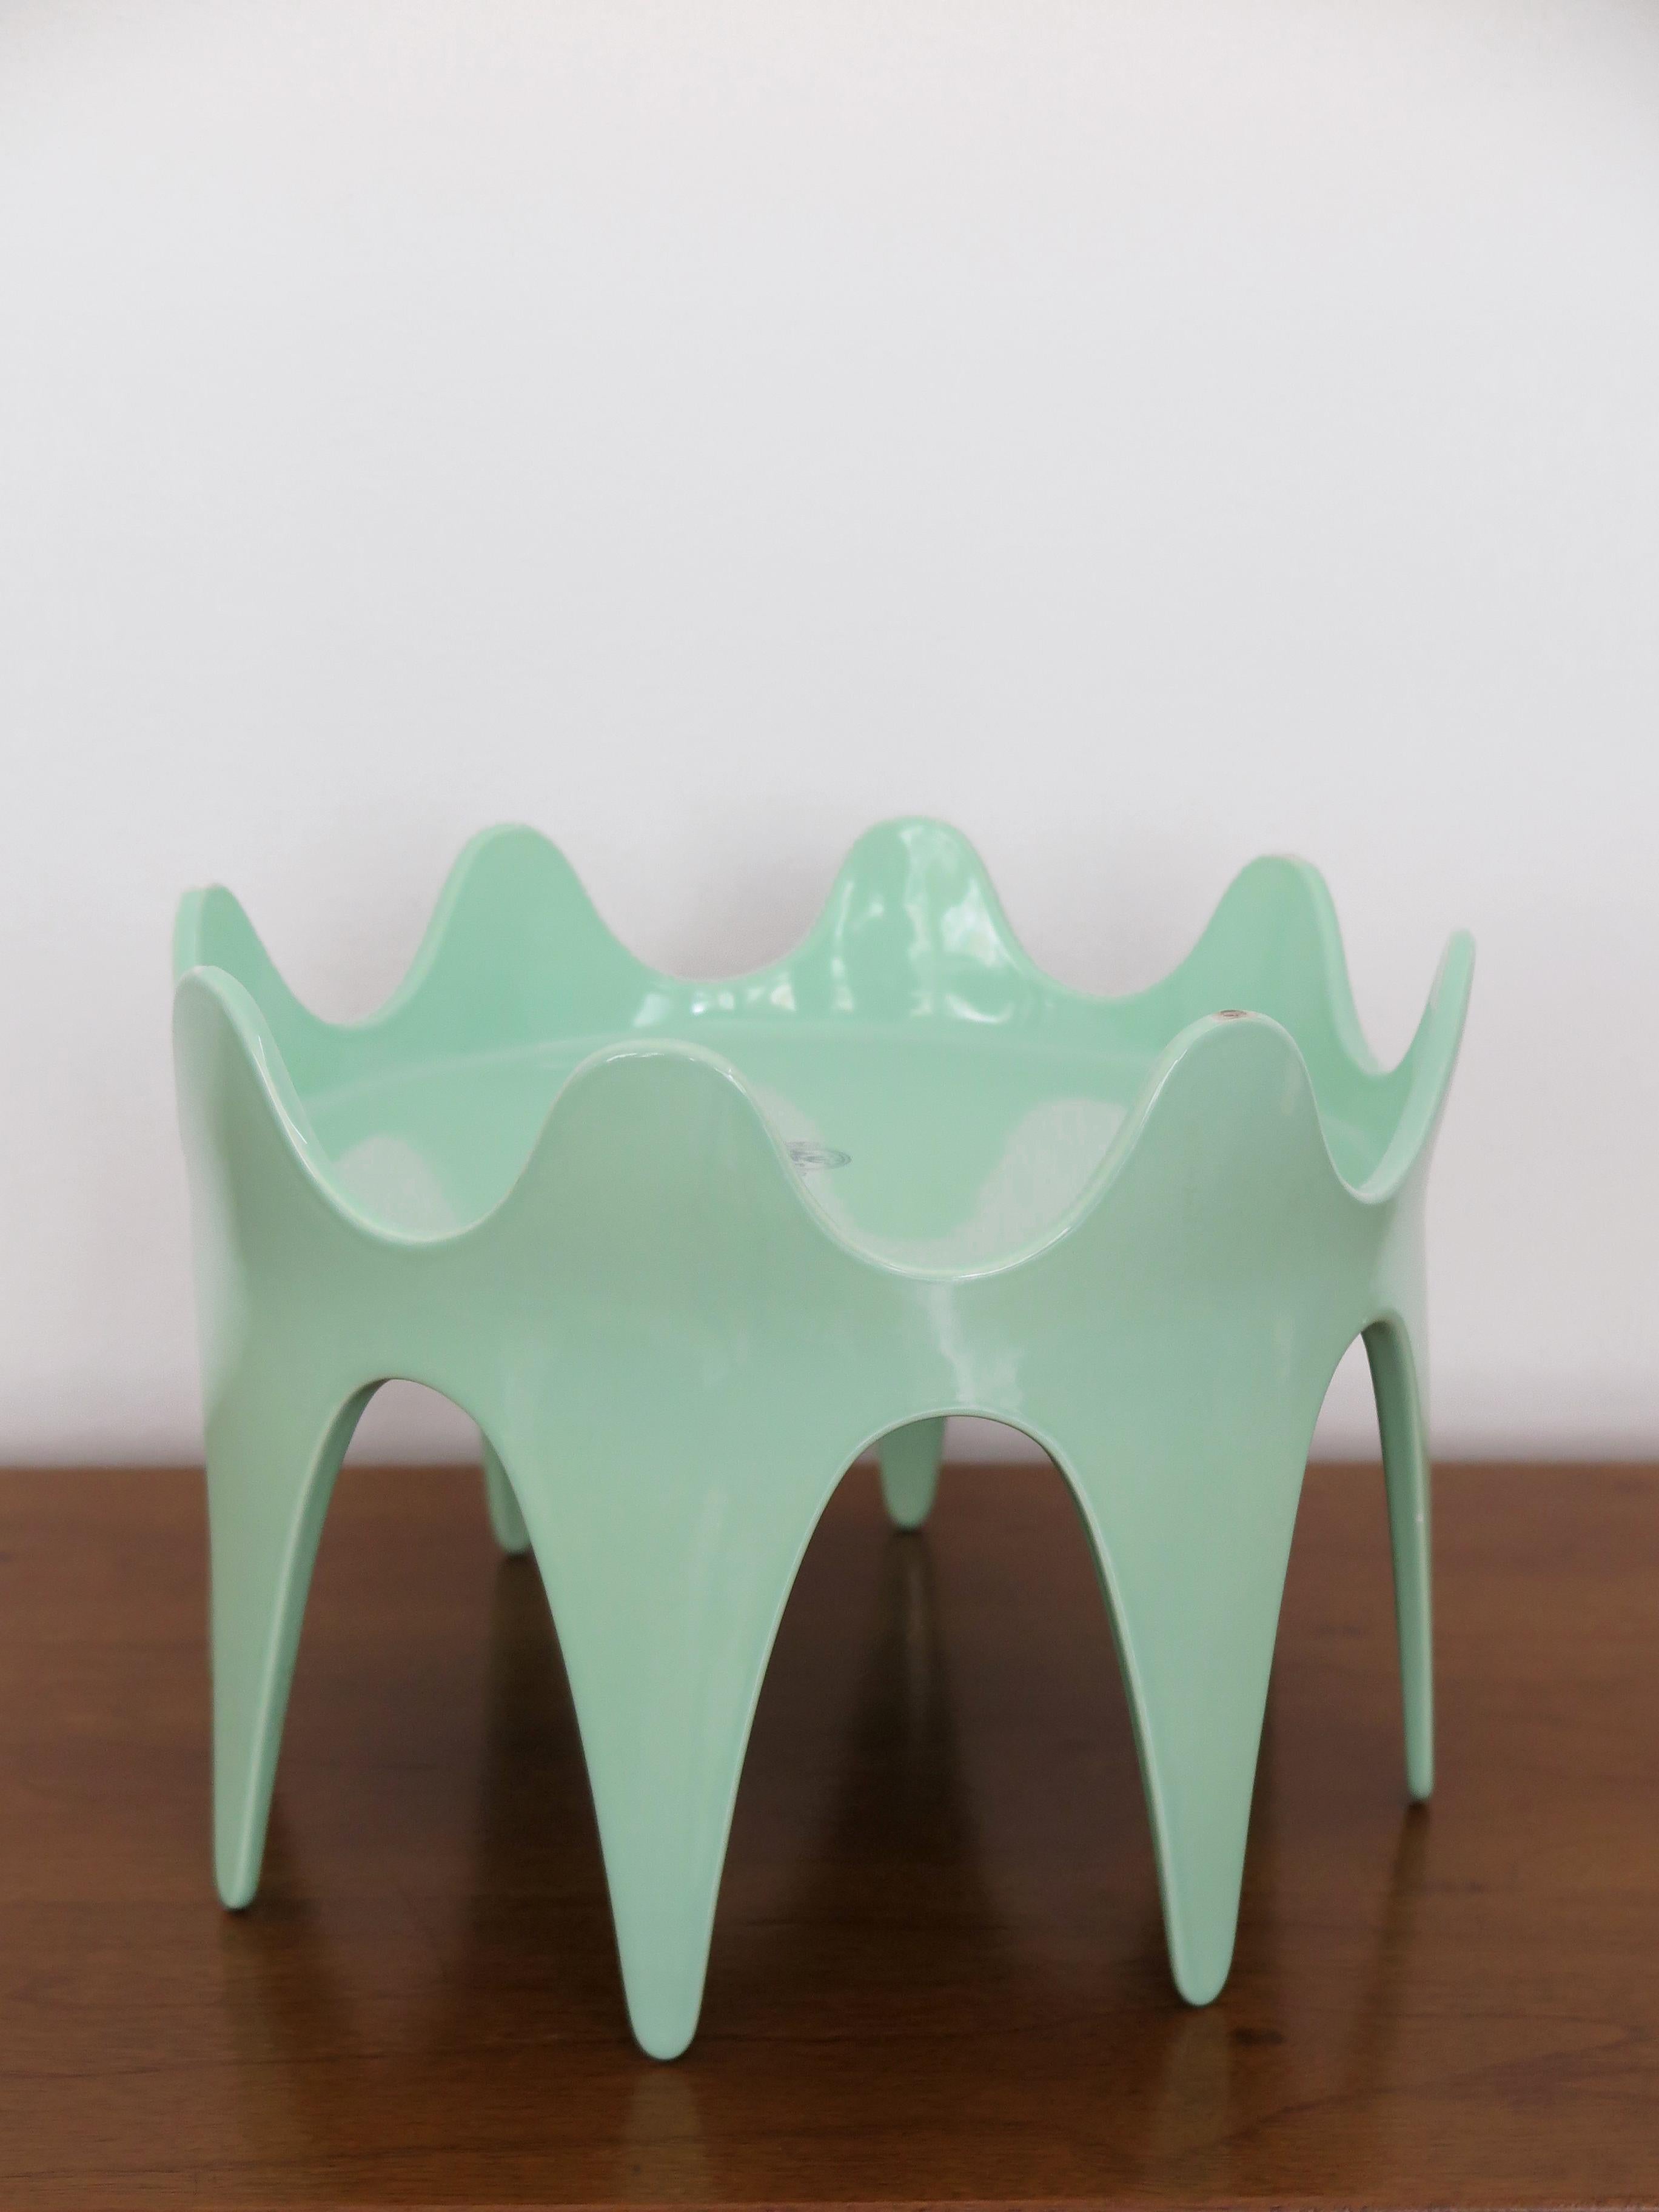 Italian glazed ceramic centrepiece sculpture, model Rumba, designed by Italian artist Ferruccio Laviani for workshop Alessio Sarri Ceramiche, Italy 1990s, no longer in production.
Manufacturer's mark under the base.